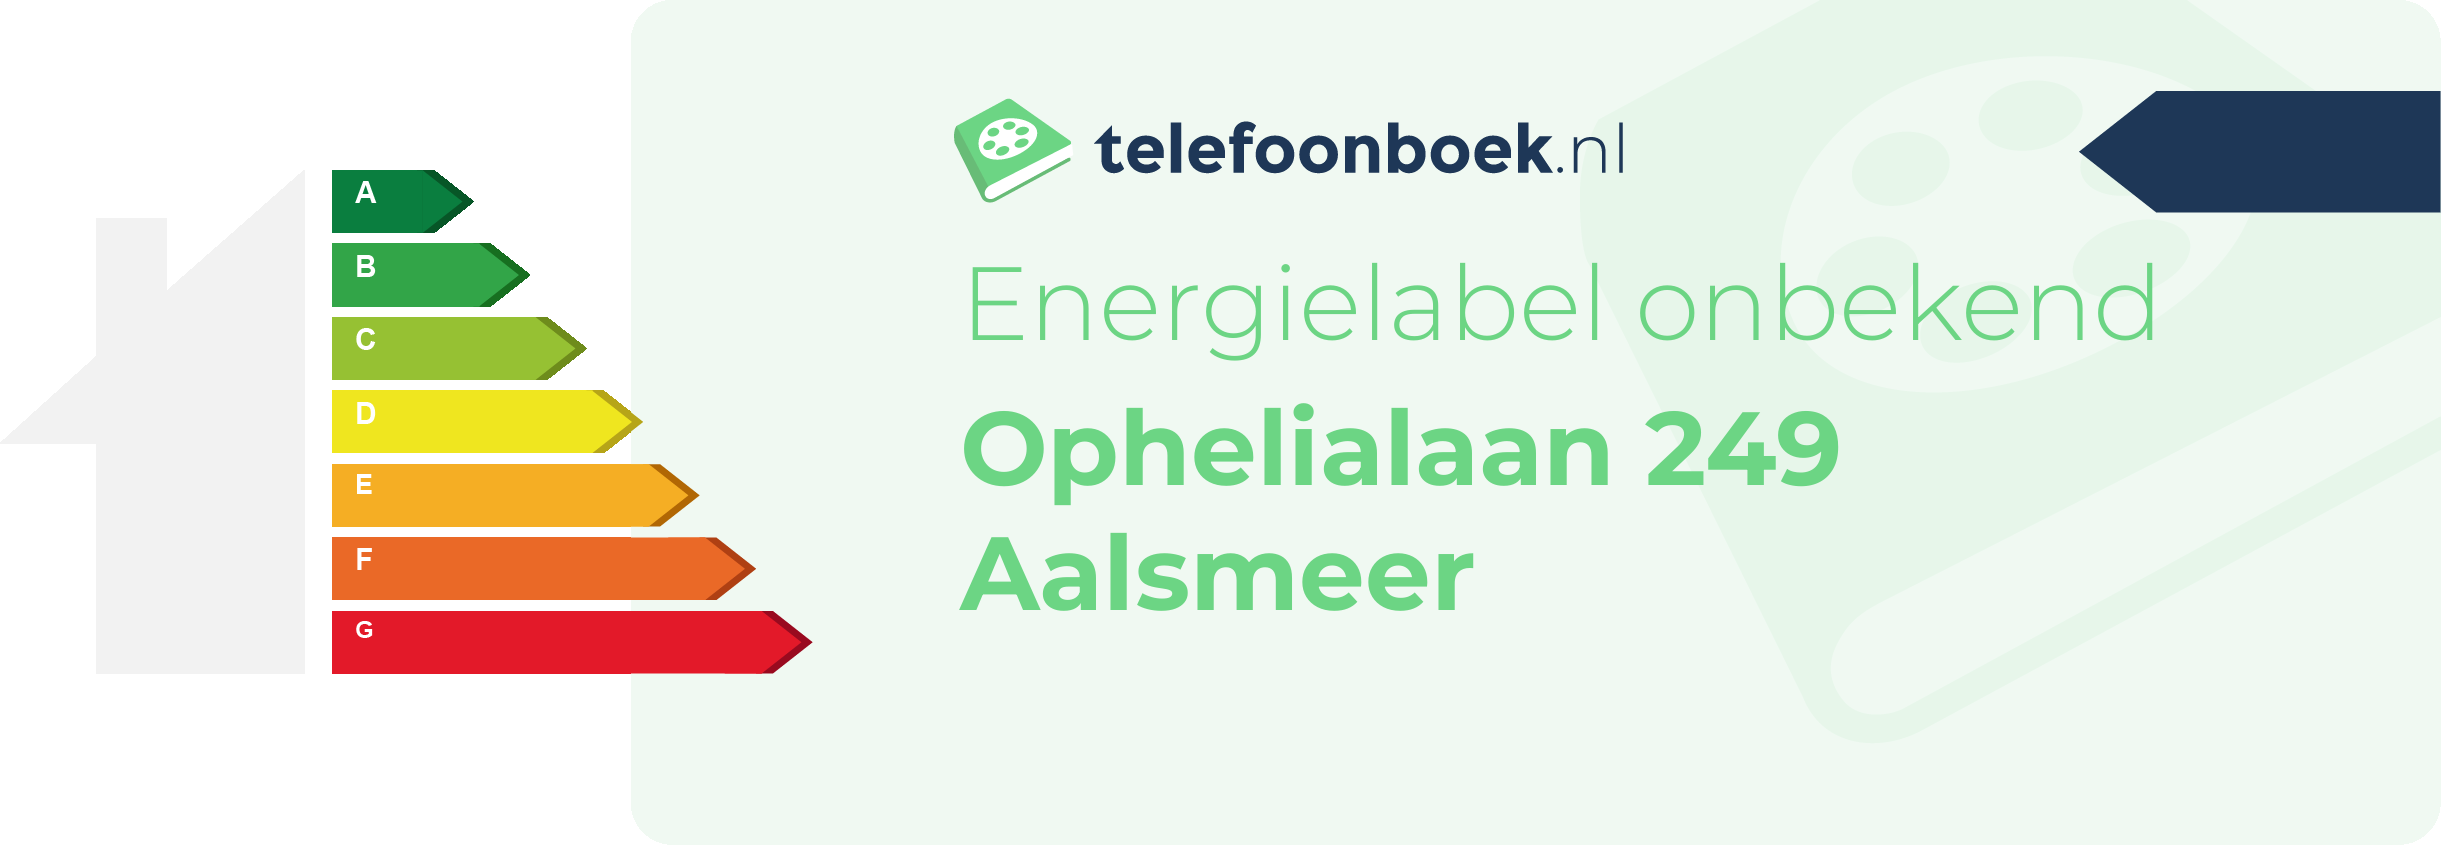 Energielabel Ophelialaan 249 Aalsmeer